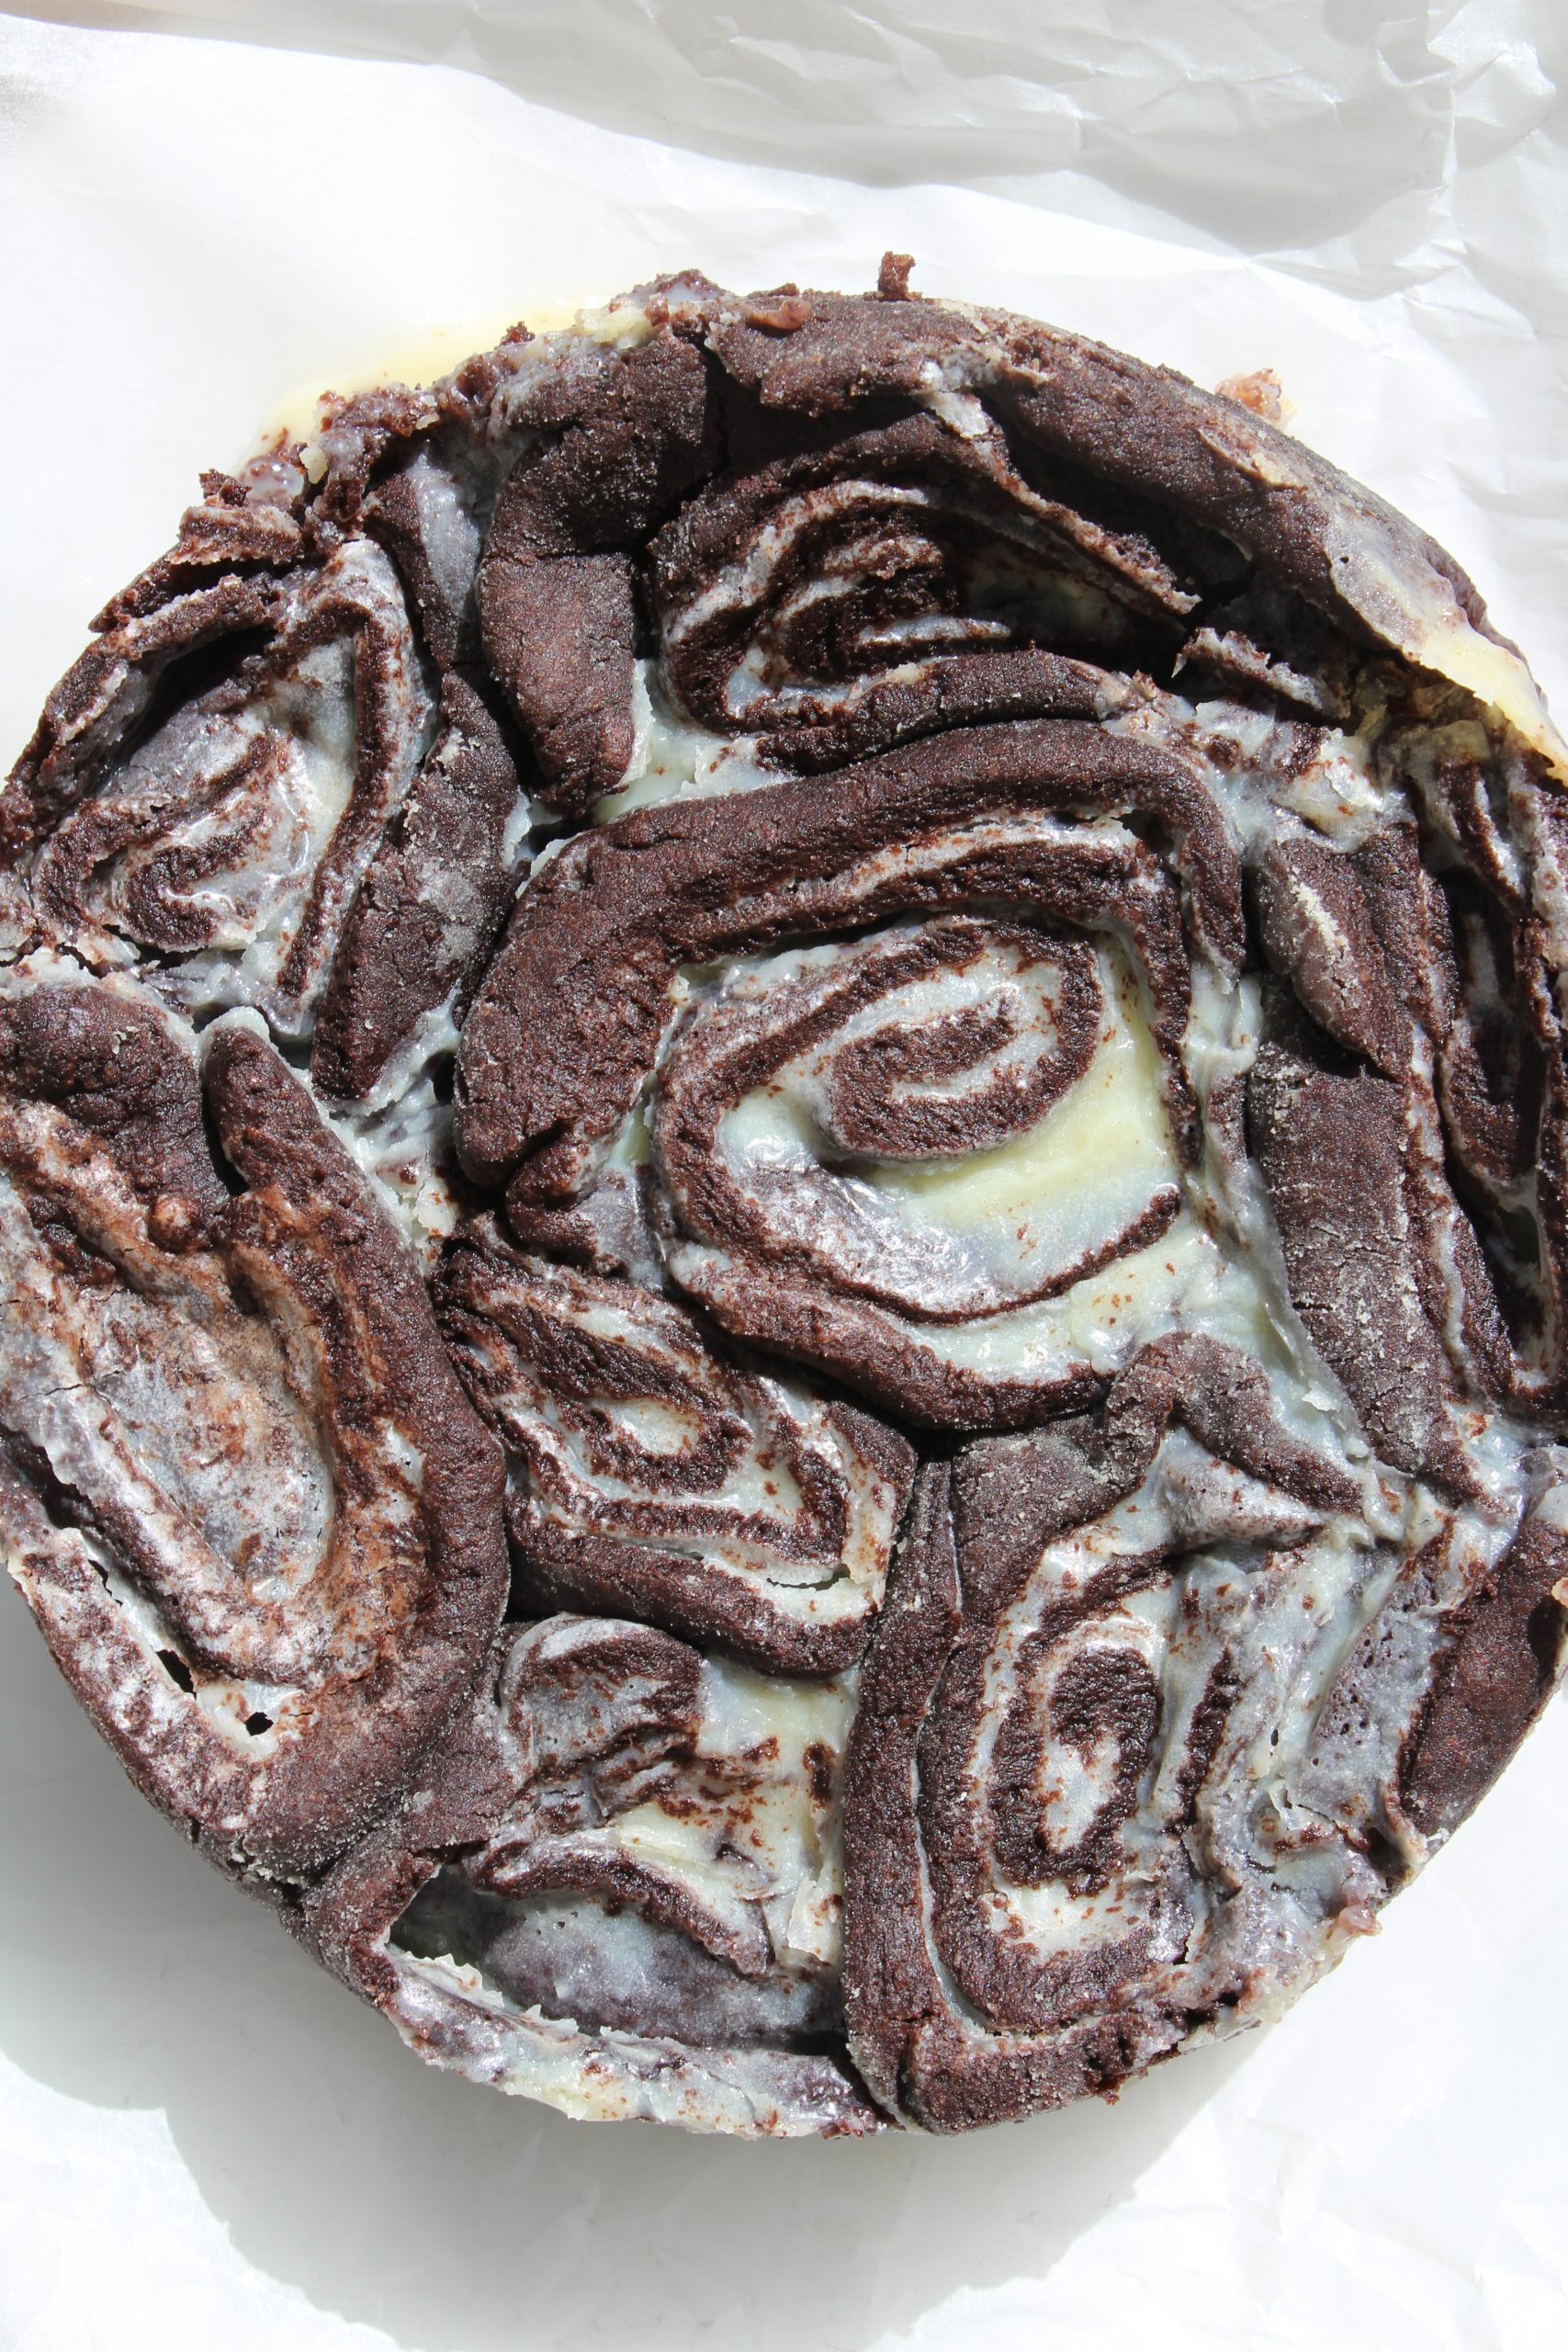 עוגת עוגיות שושנים בצק שוקולד קקאו במילוי גנאש שוקולד לבן (עוגת עוגיות אמסטרדם)